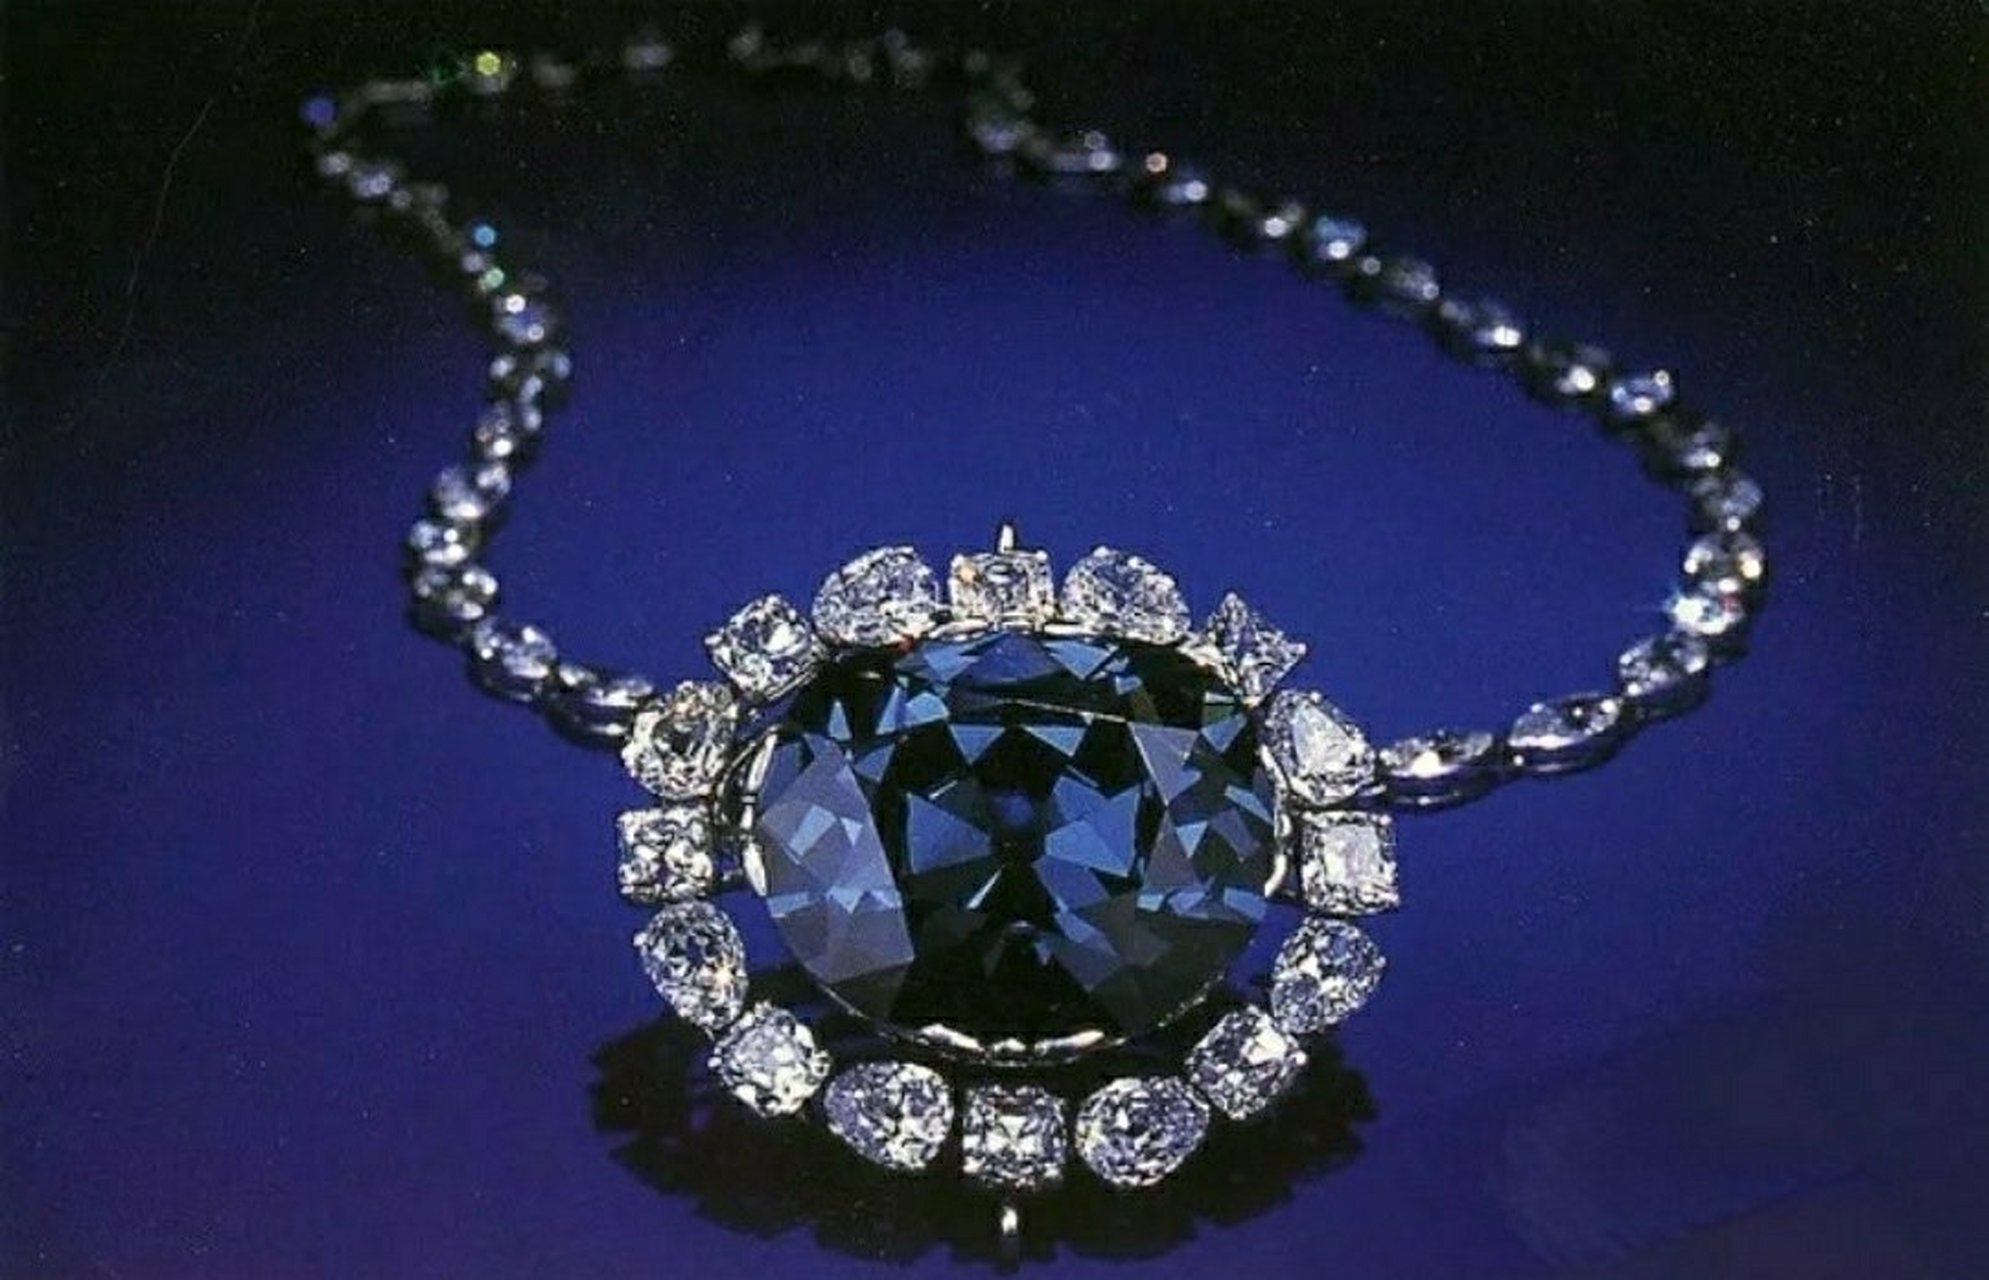 蓝宝石英文名为sapphire,源于拉丁文spphins,意思是蓝色